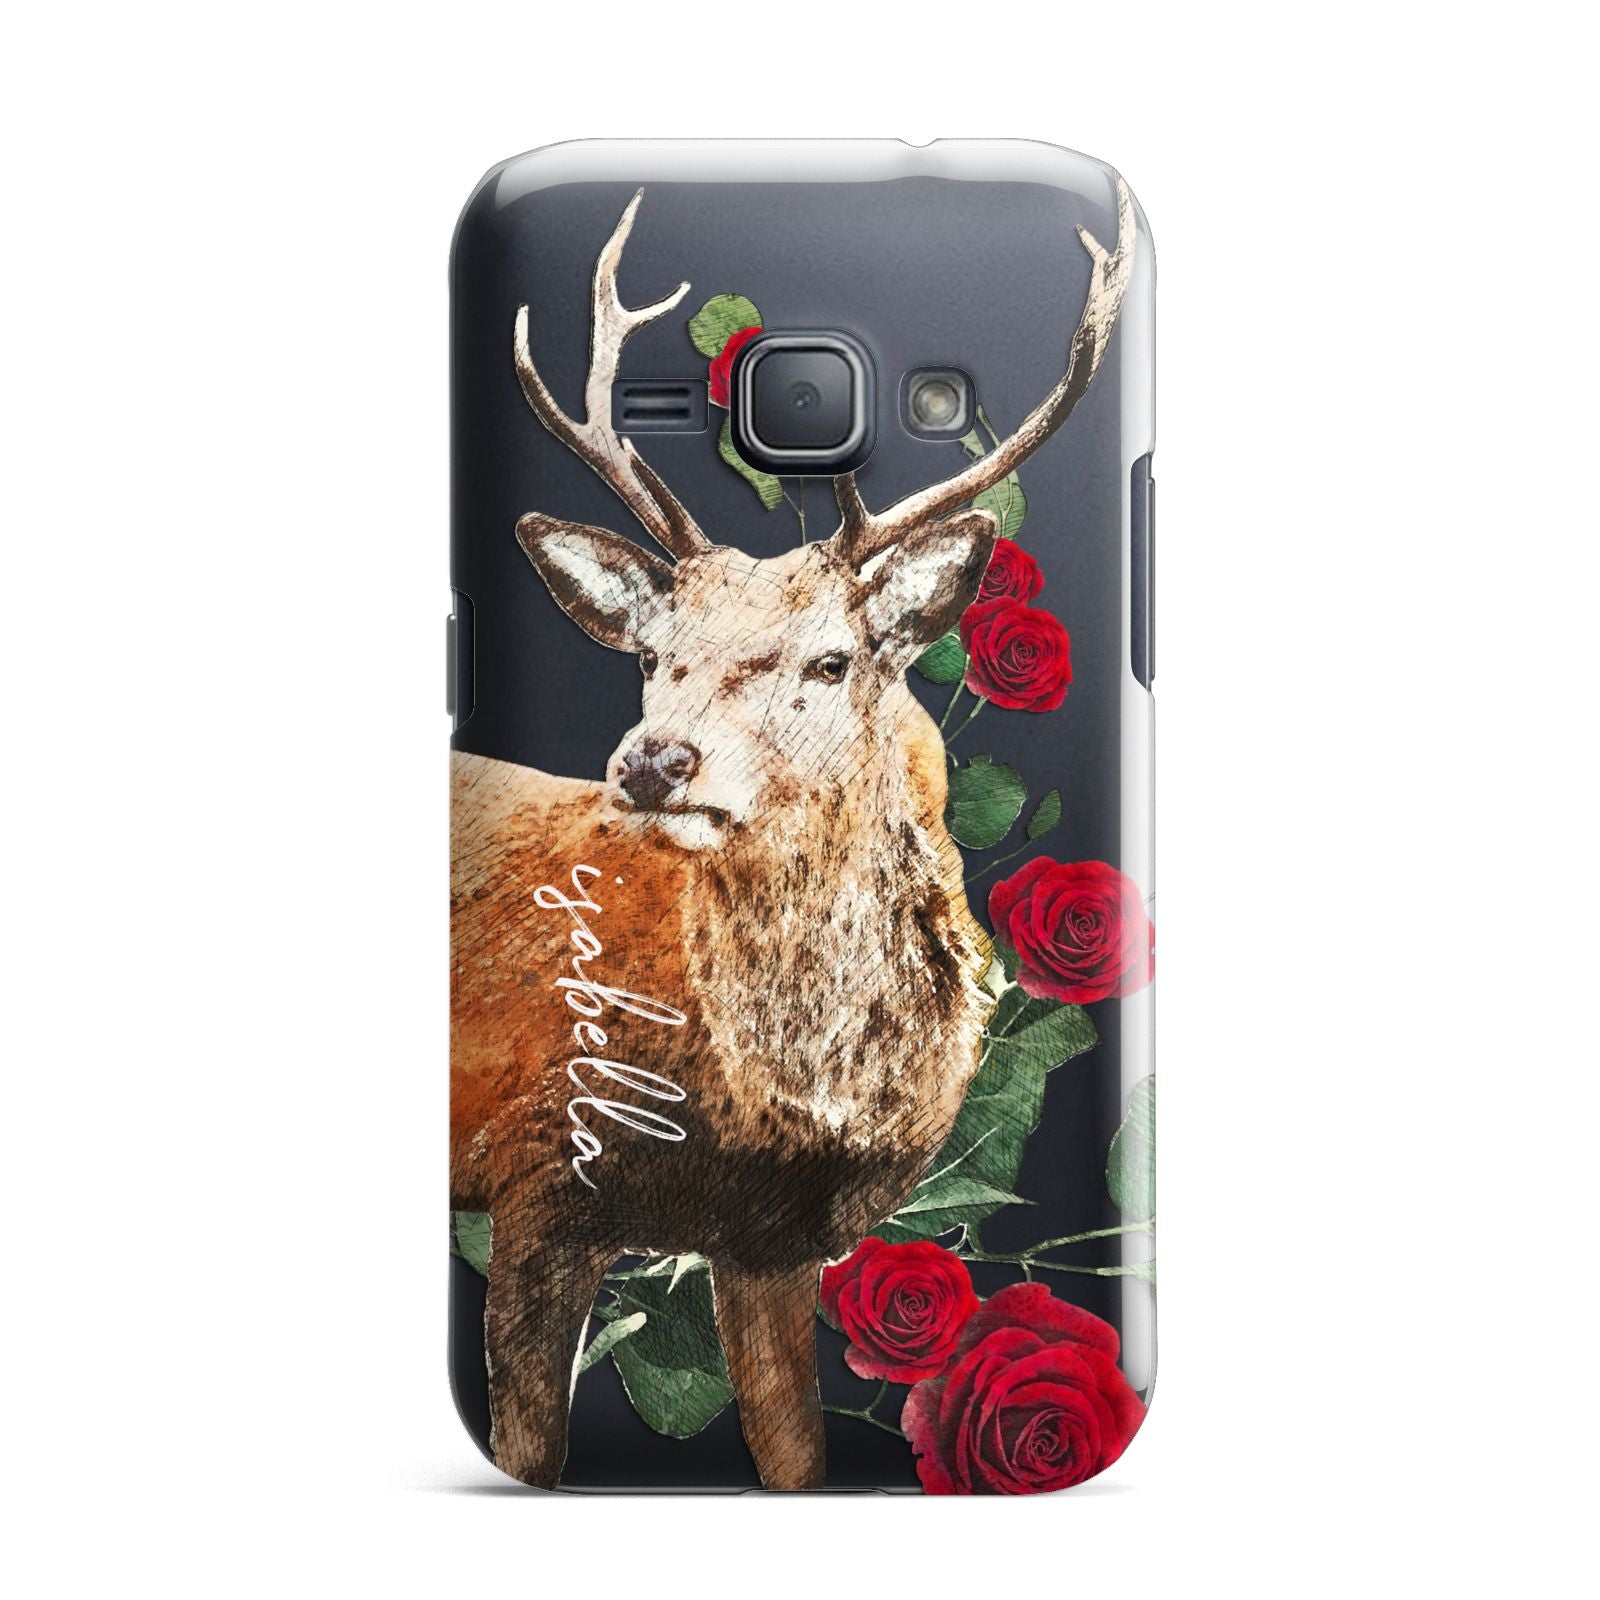 Personalised Deer Name Samsung Galaxy J1 2016 Case